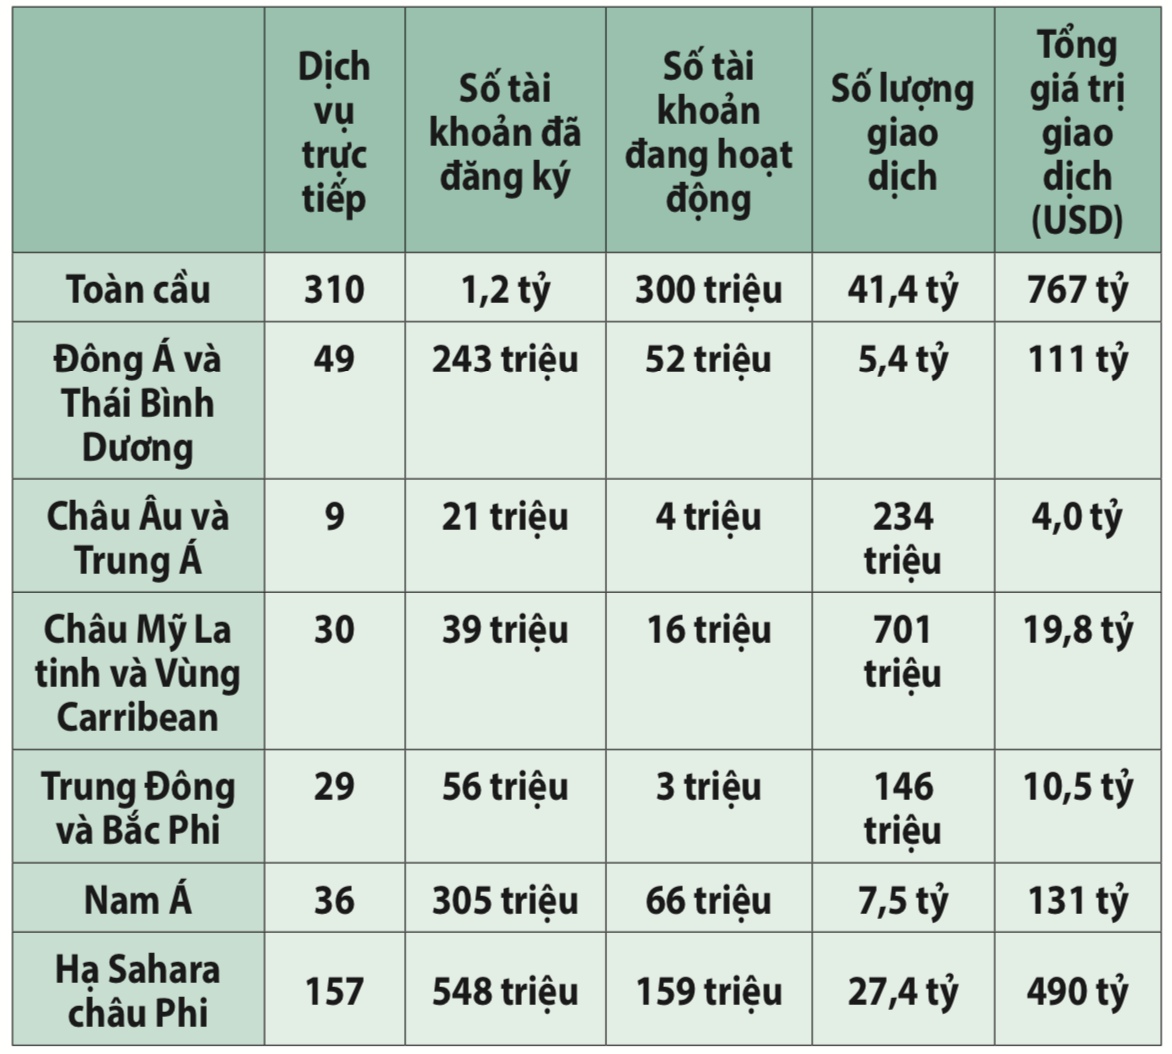 Cơ hội và những thách thức khi triển khai dịch vụ Mobile money tại Việt Nam - Ảnh 2.